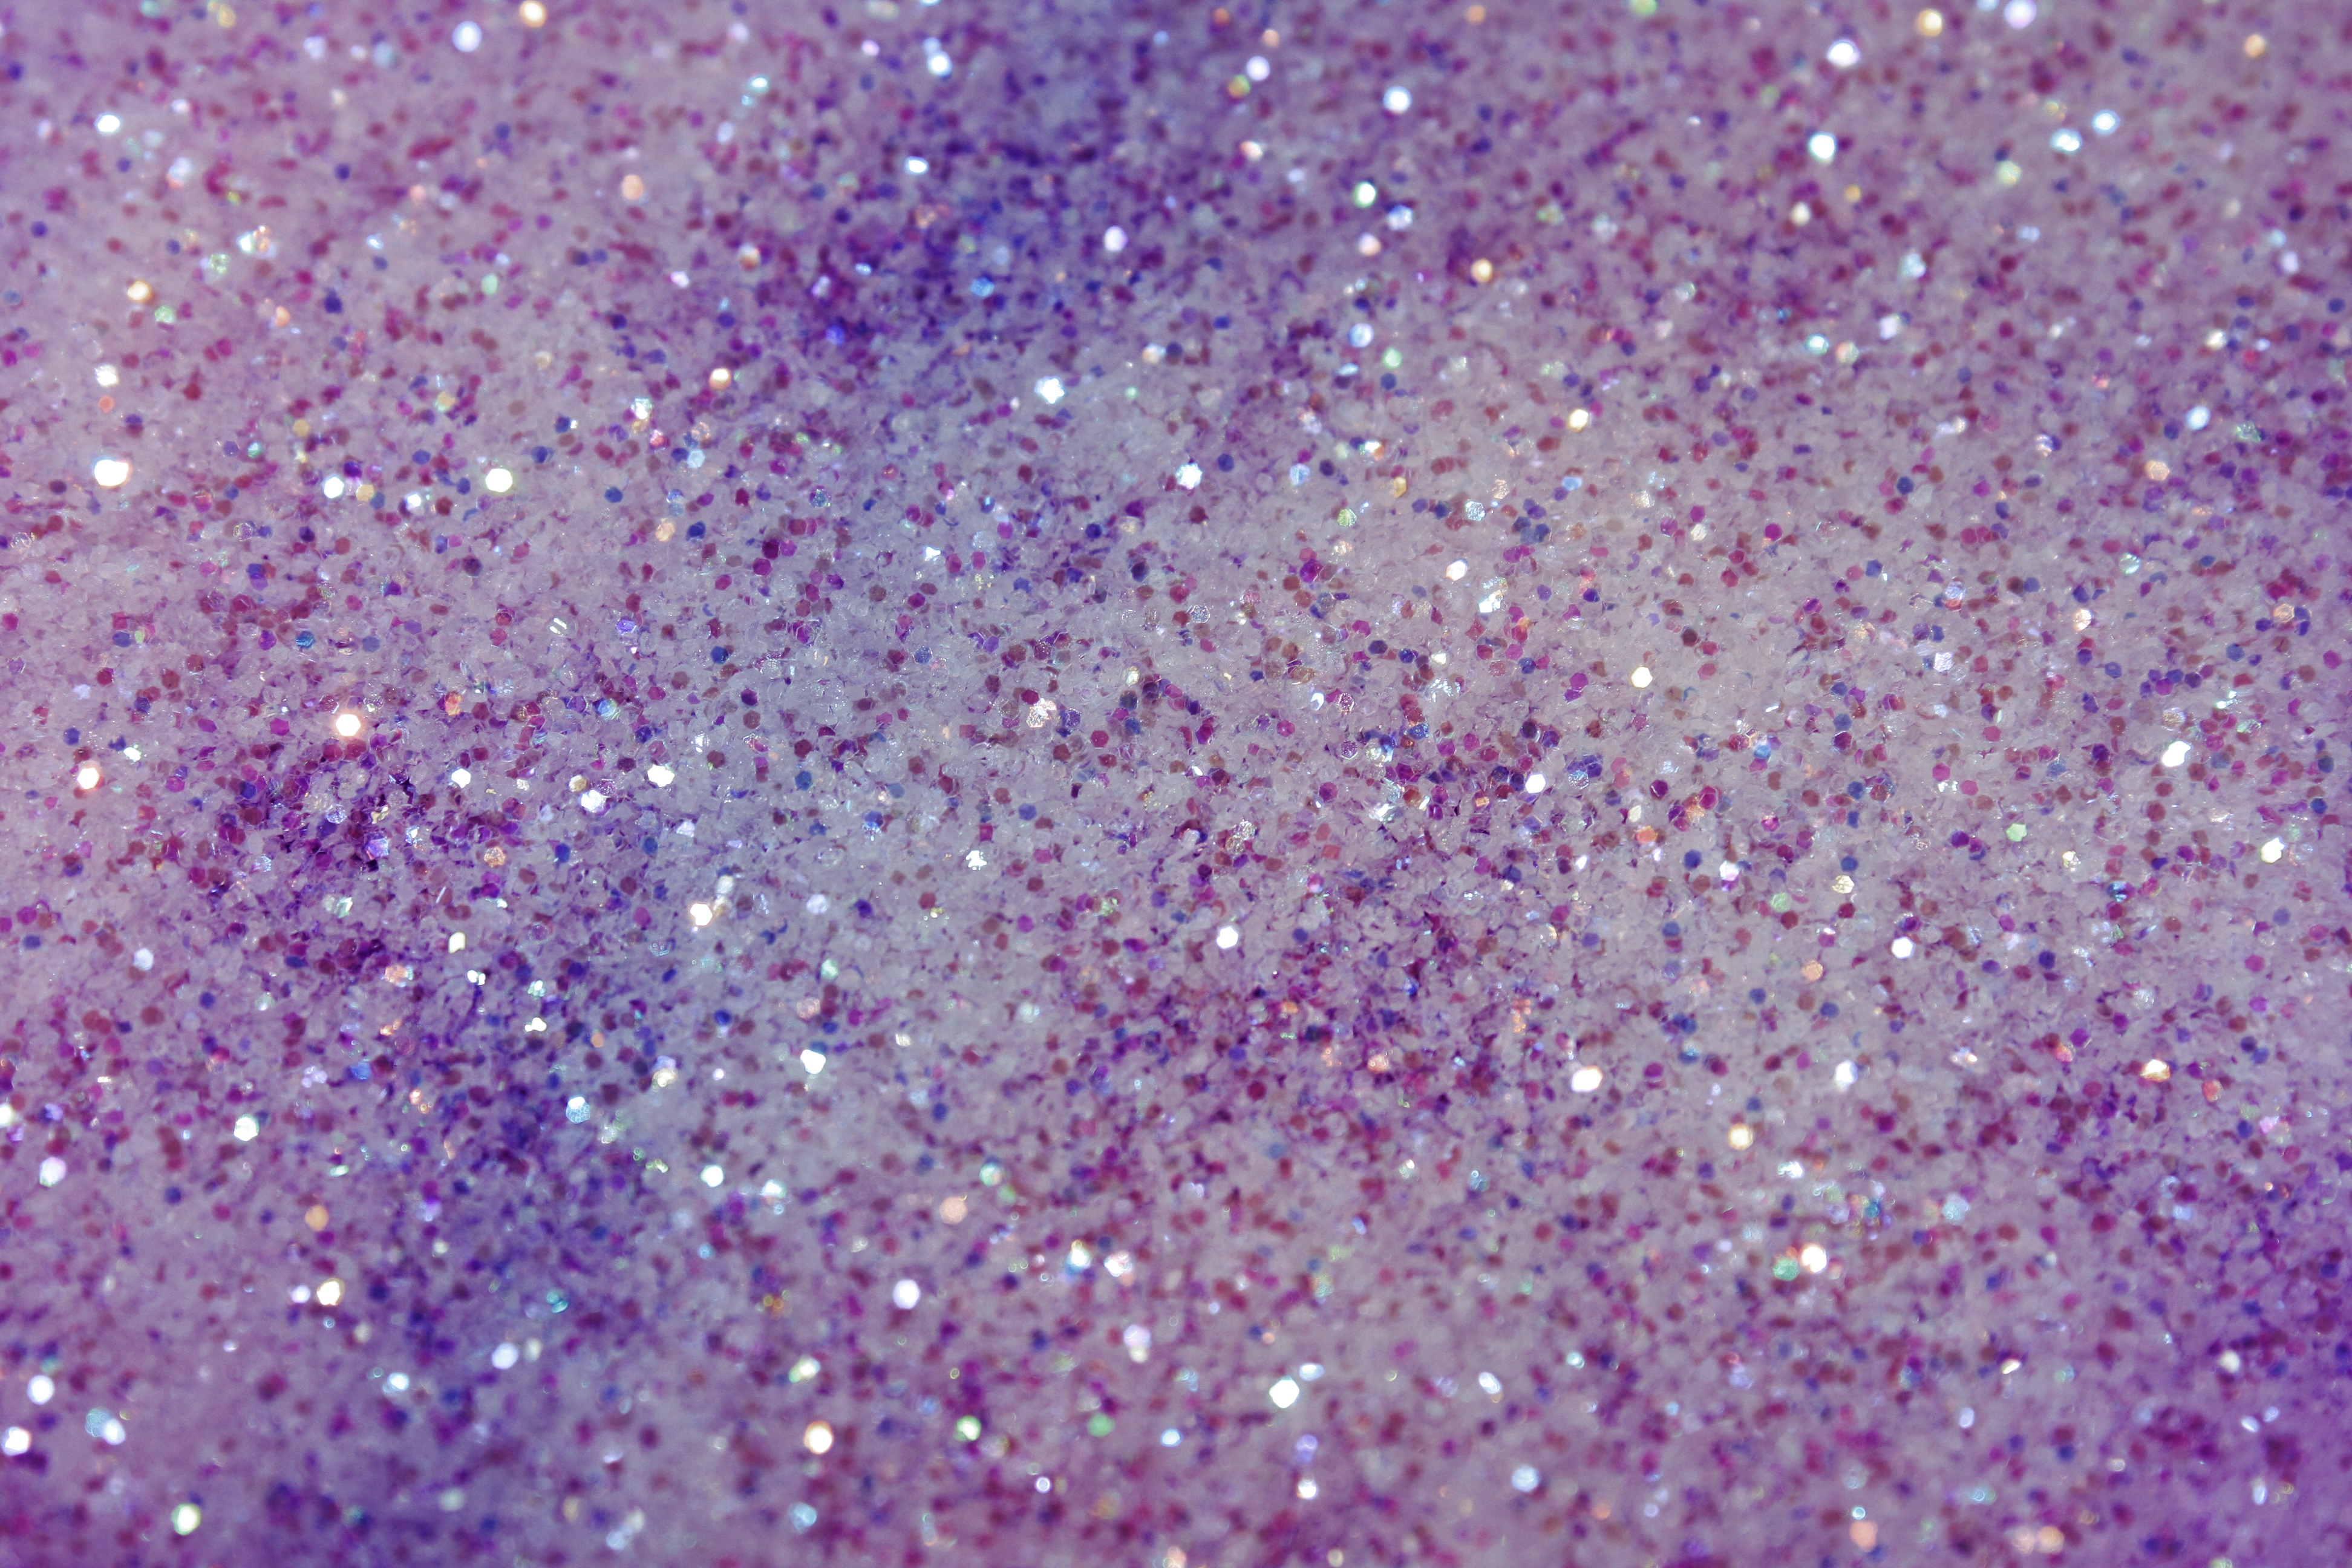 Diamond Galaxy Cloud Glitter Wallpaper  Purple and Pink  Arthouse 260009